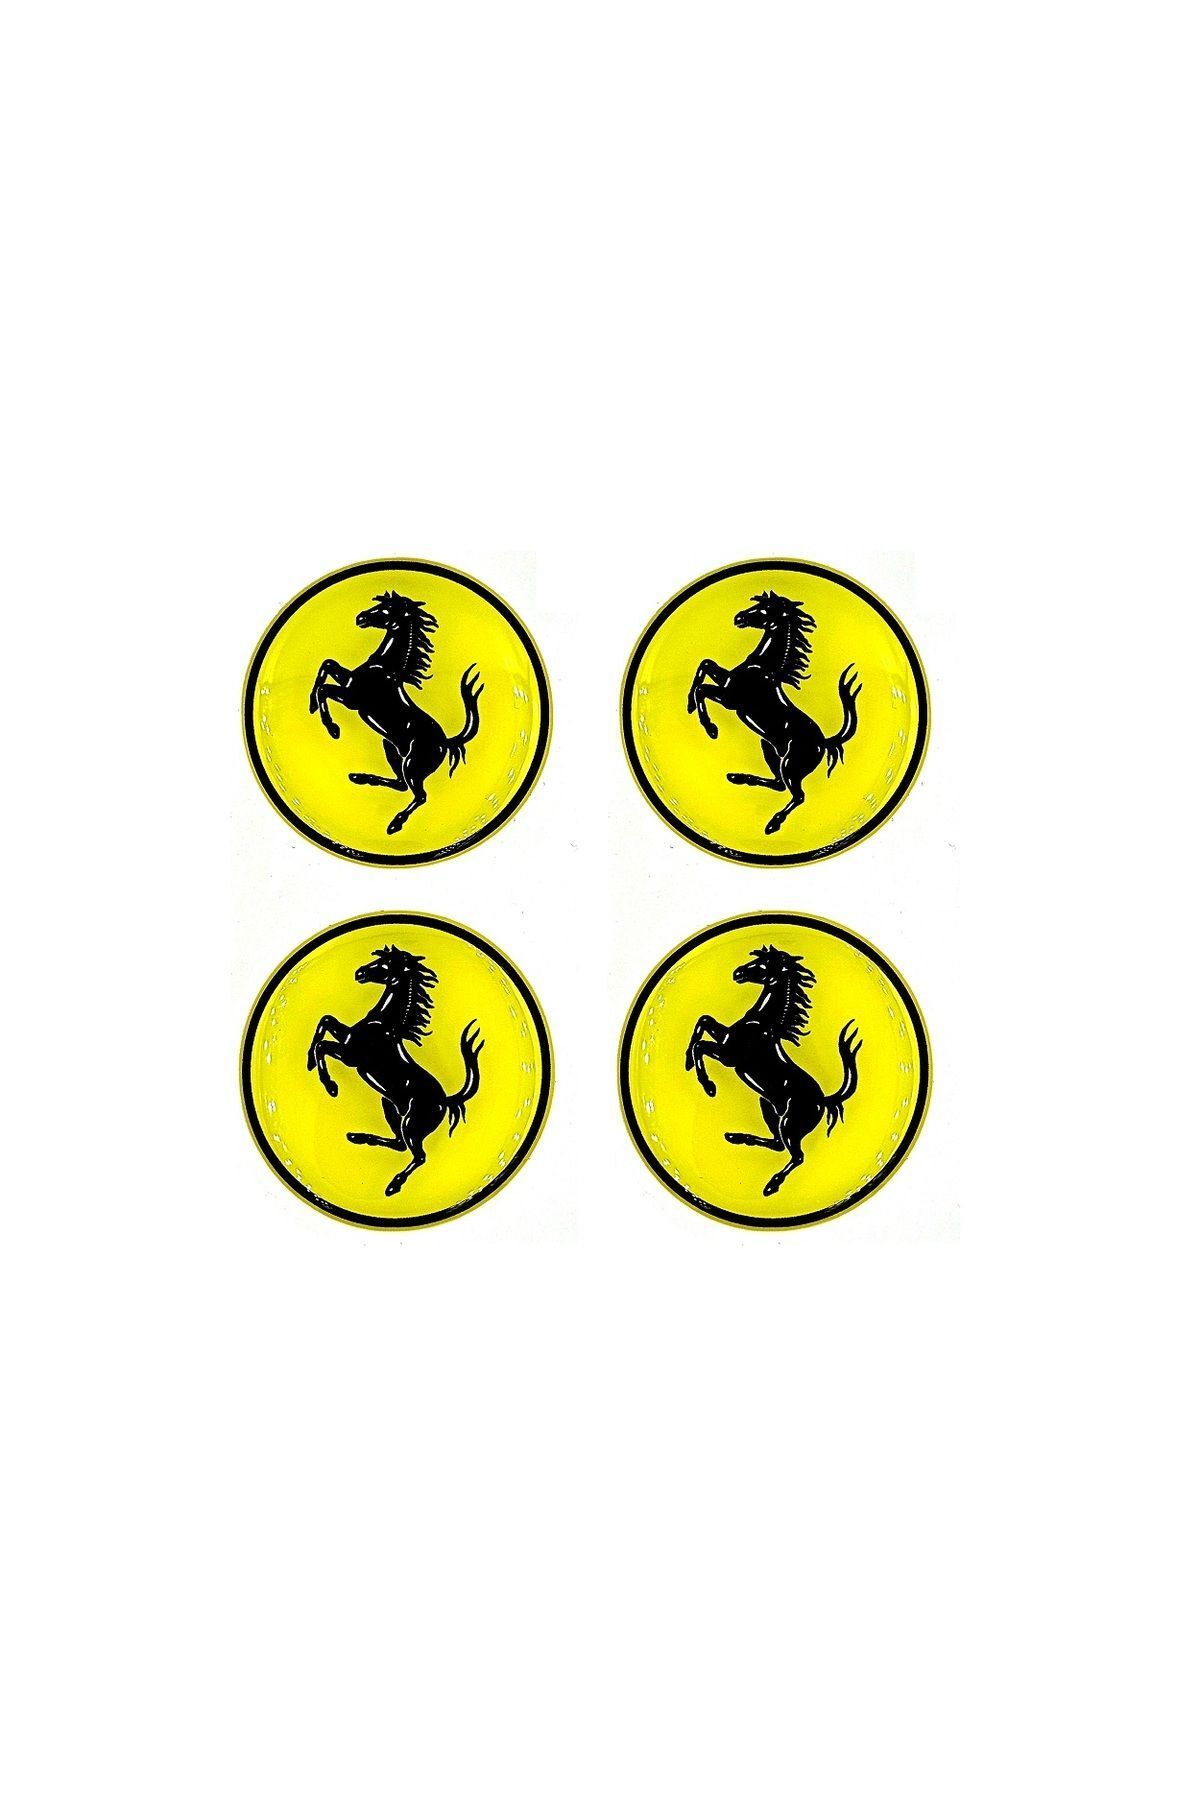 BsElektronik Ferrari Jant Göbeği  Damla Sticker - Jant Göbeği Damla Sticker Ferrari